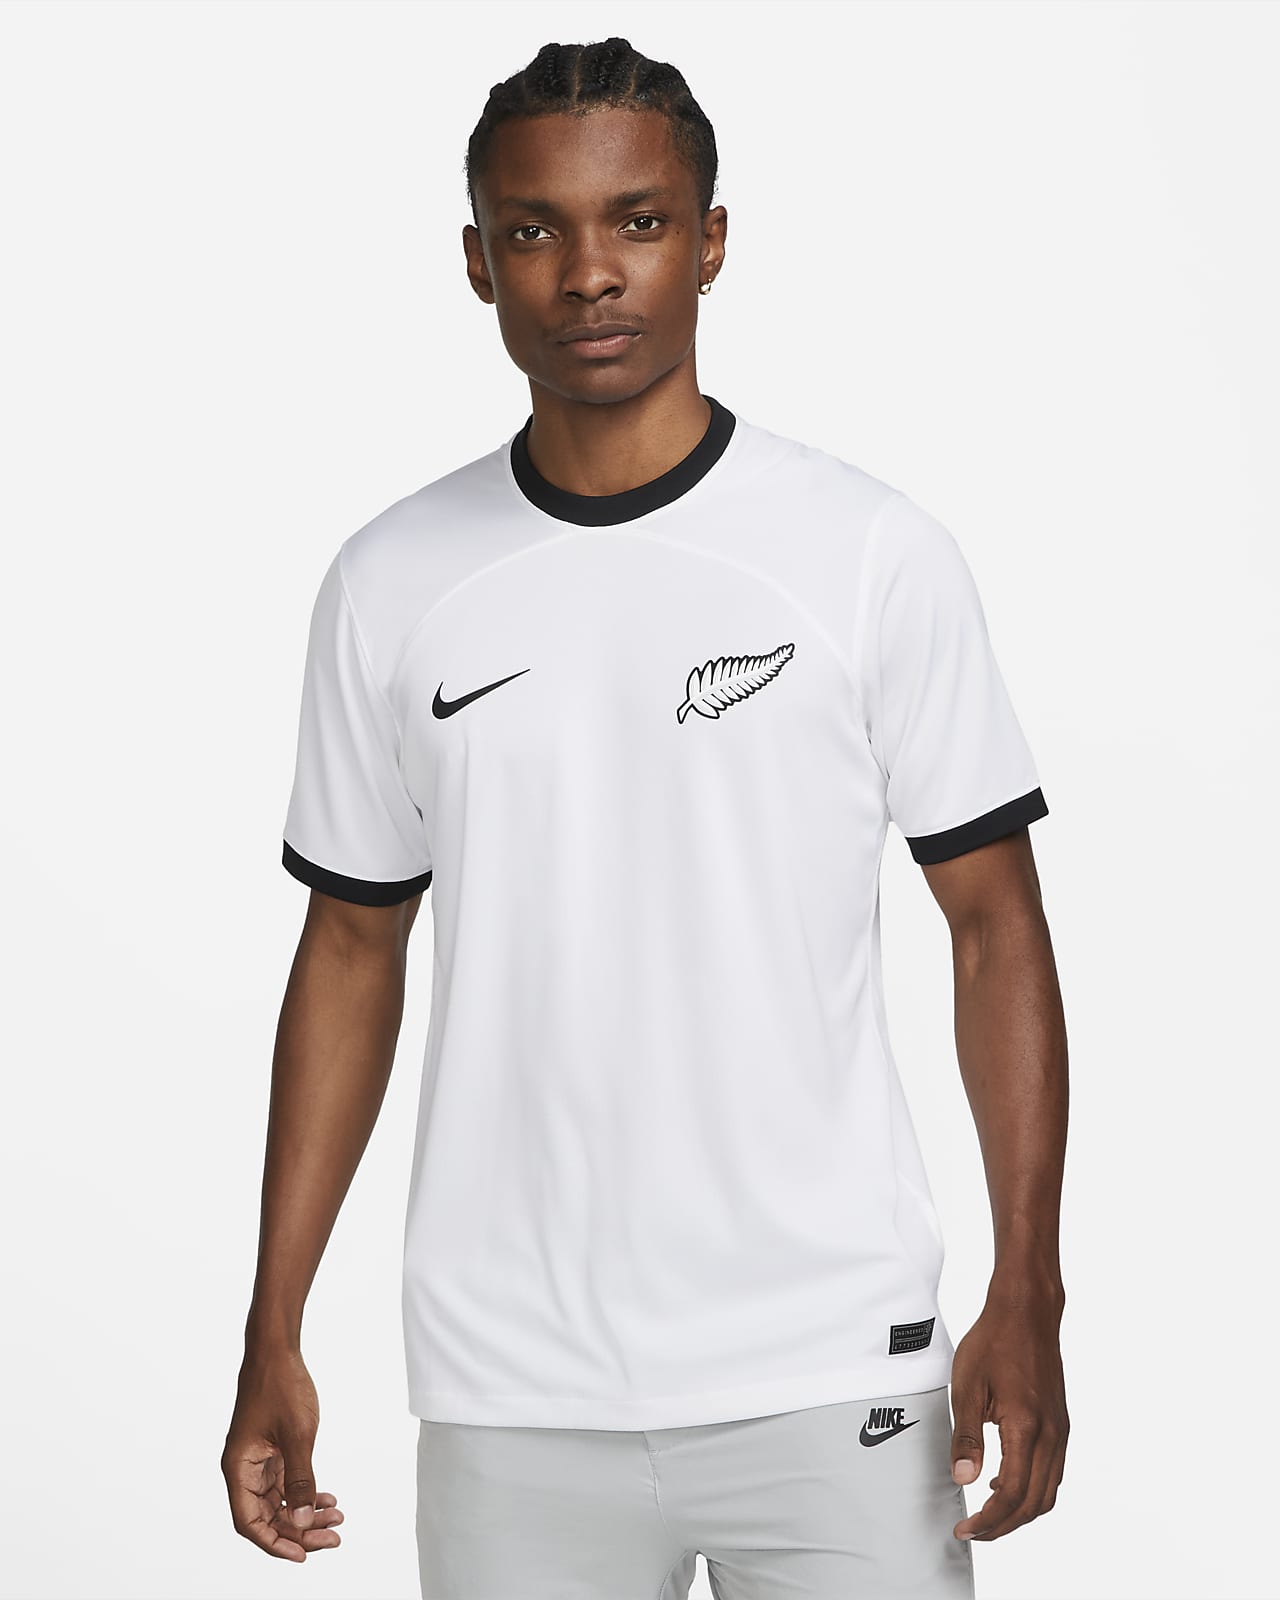 Niet meer geldig Kano eend New Zealand 2022/23 Stadium Home Men's Nike Dri-FIT Football Shirt. Nike LU